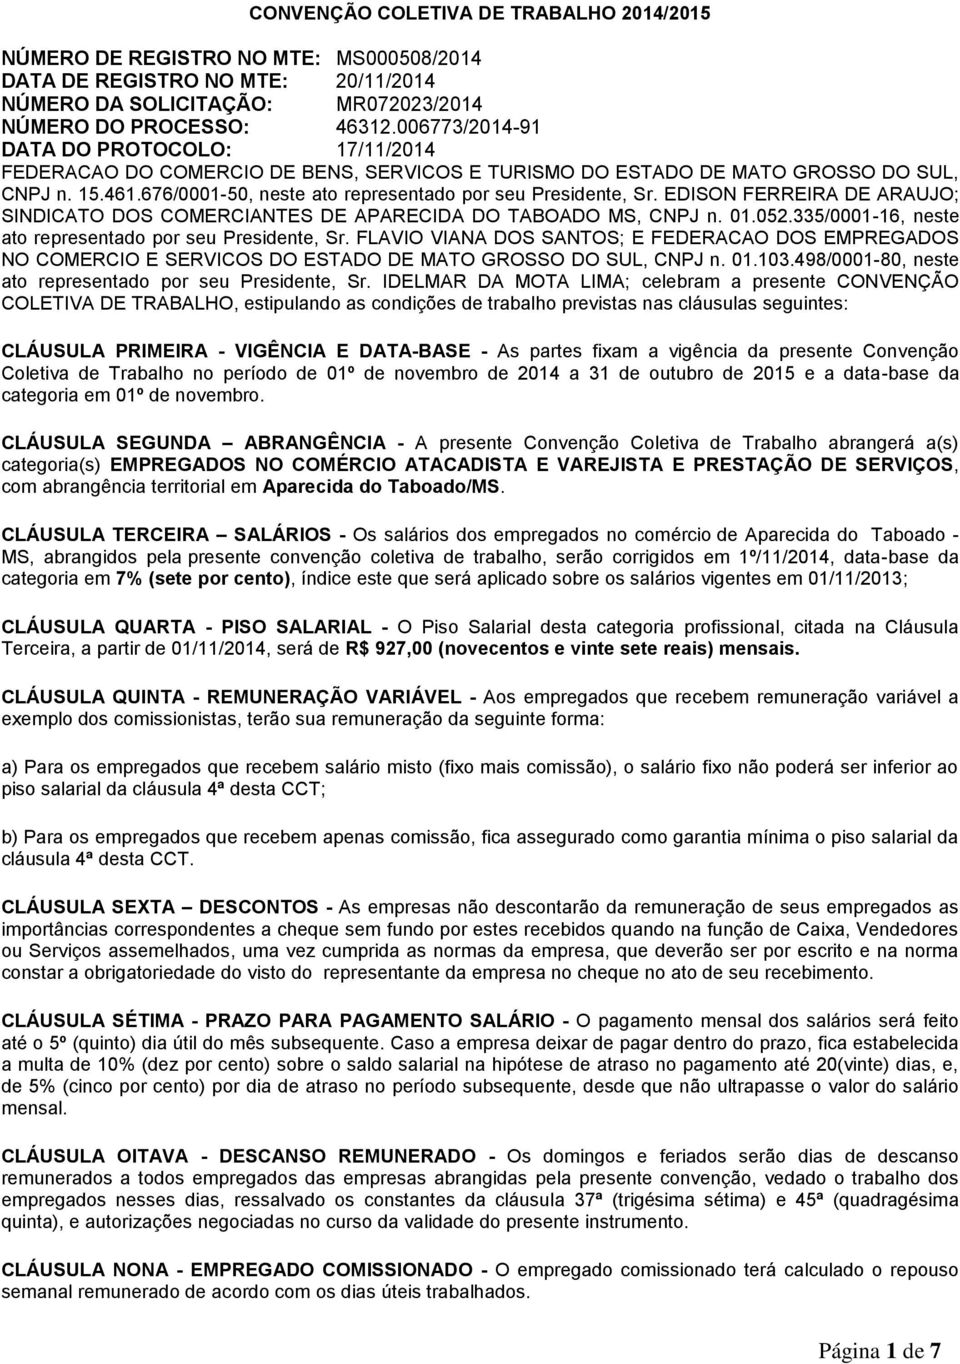 676/0001-50, neste ato representado por seu Presidente, Sr. EDISON FERREIRA DE ARAUJO; SINDICATO DOS COMERCIANTES DE APARECIDA DO TABOADO MS, CNPJ n. 01.052.